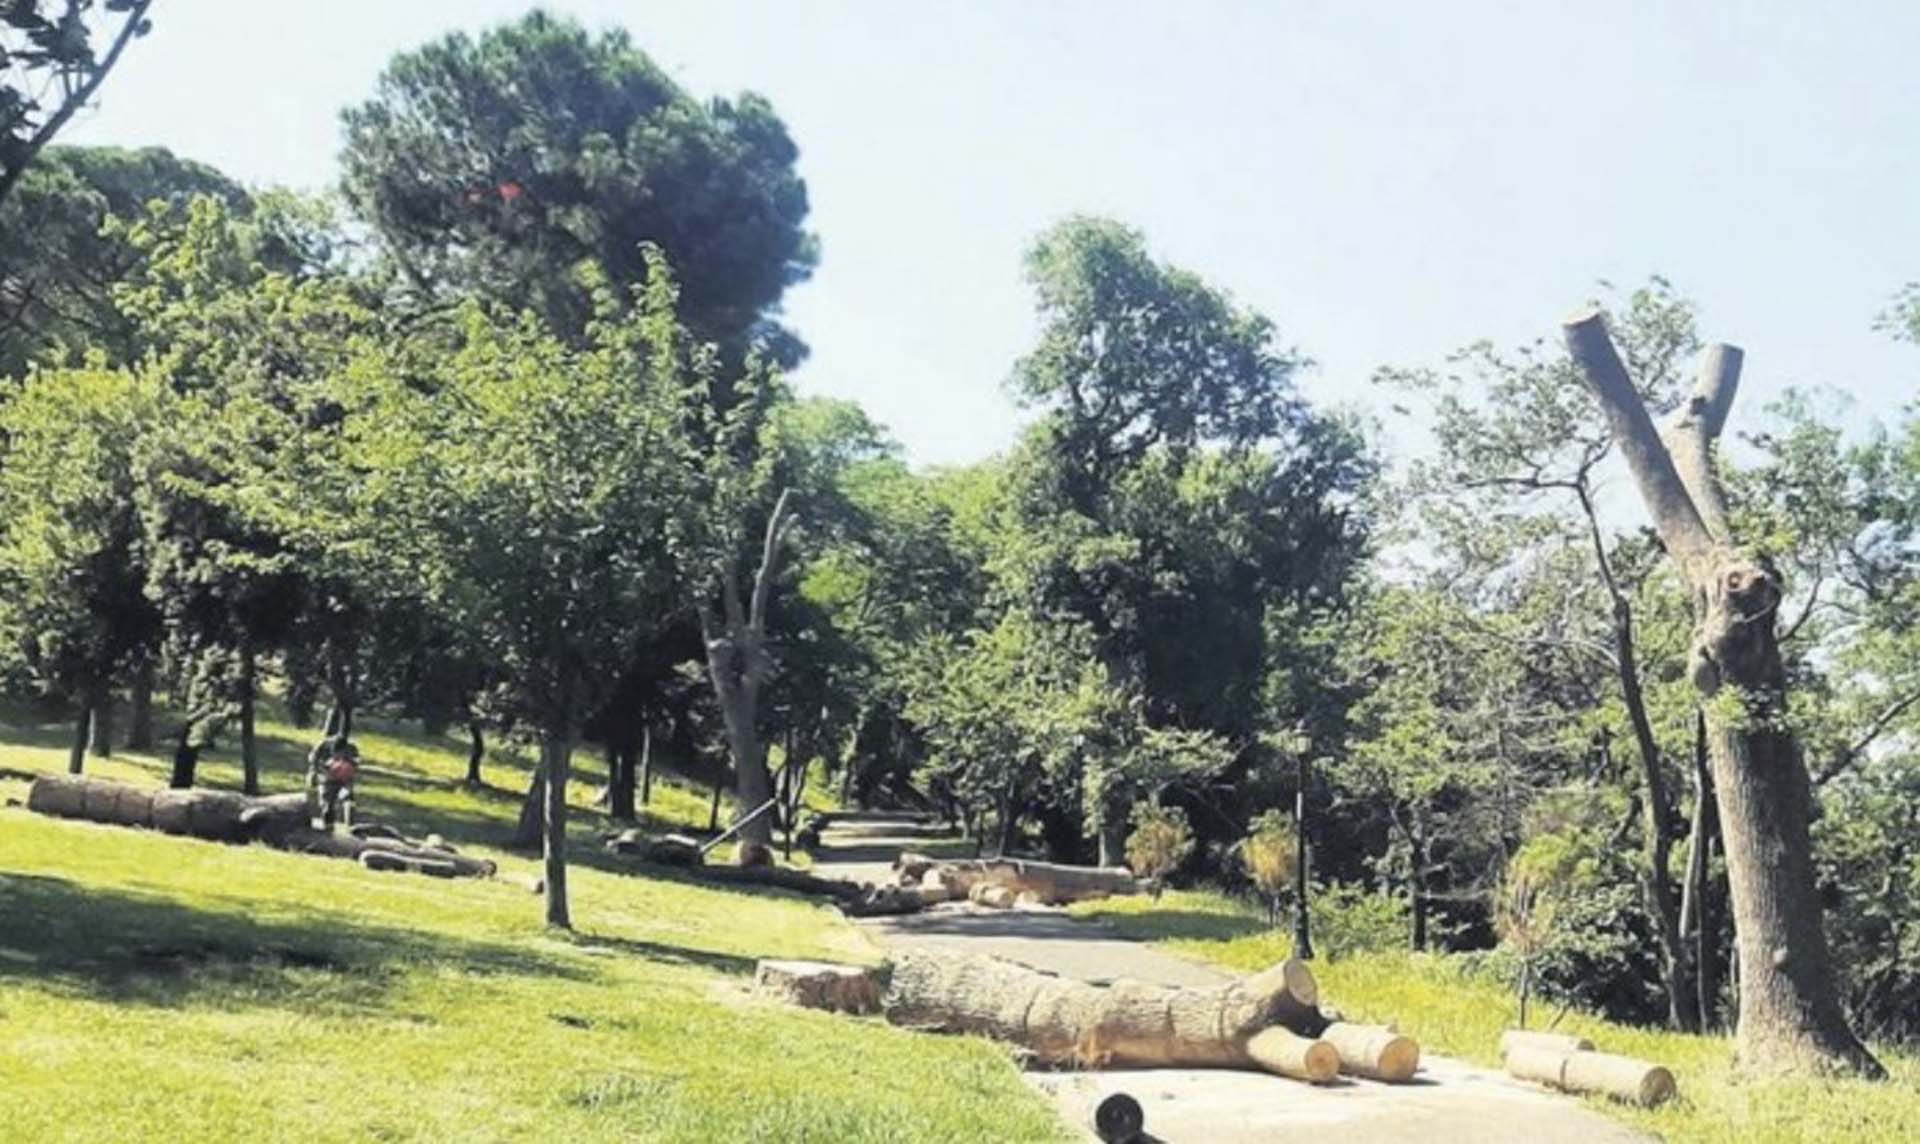 İBB, Emirgan Korusu'ndaki ağaçları izinsiz kesmiş! Orman Bölge Müdürlüğü harekete geçti, cezayı kesti 